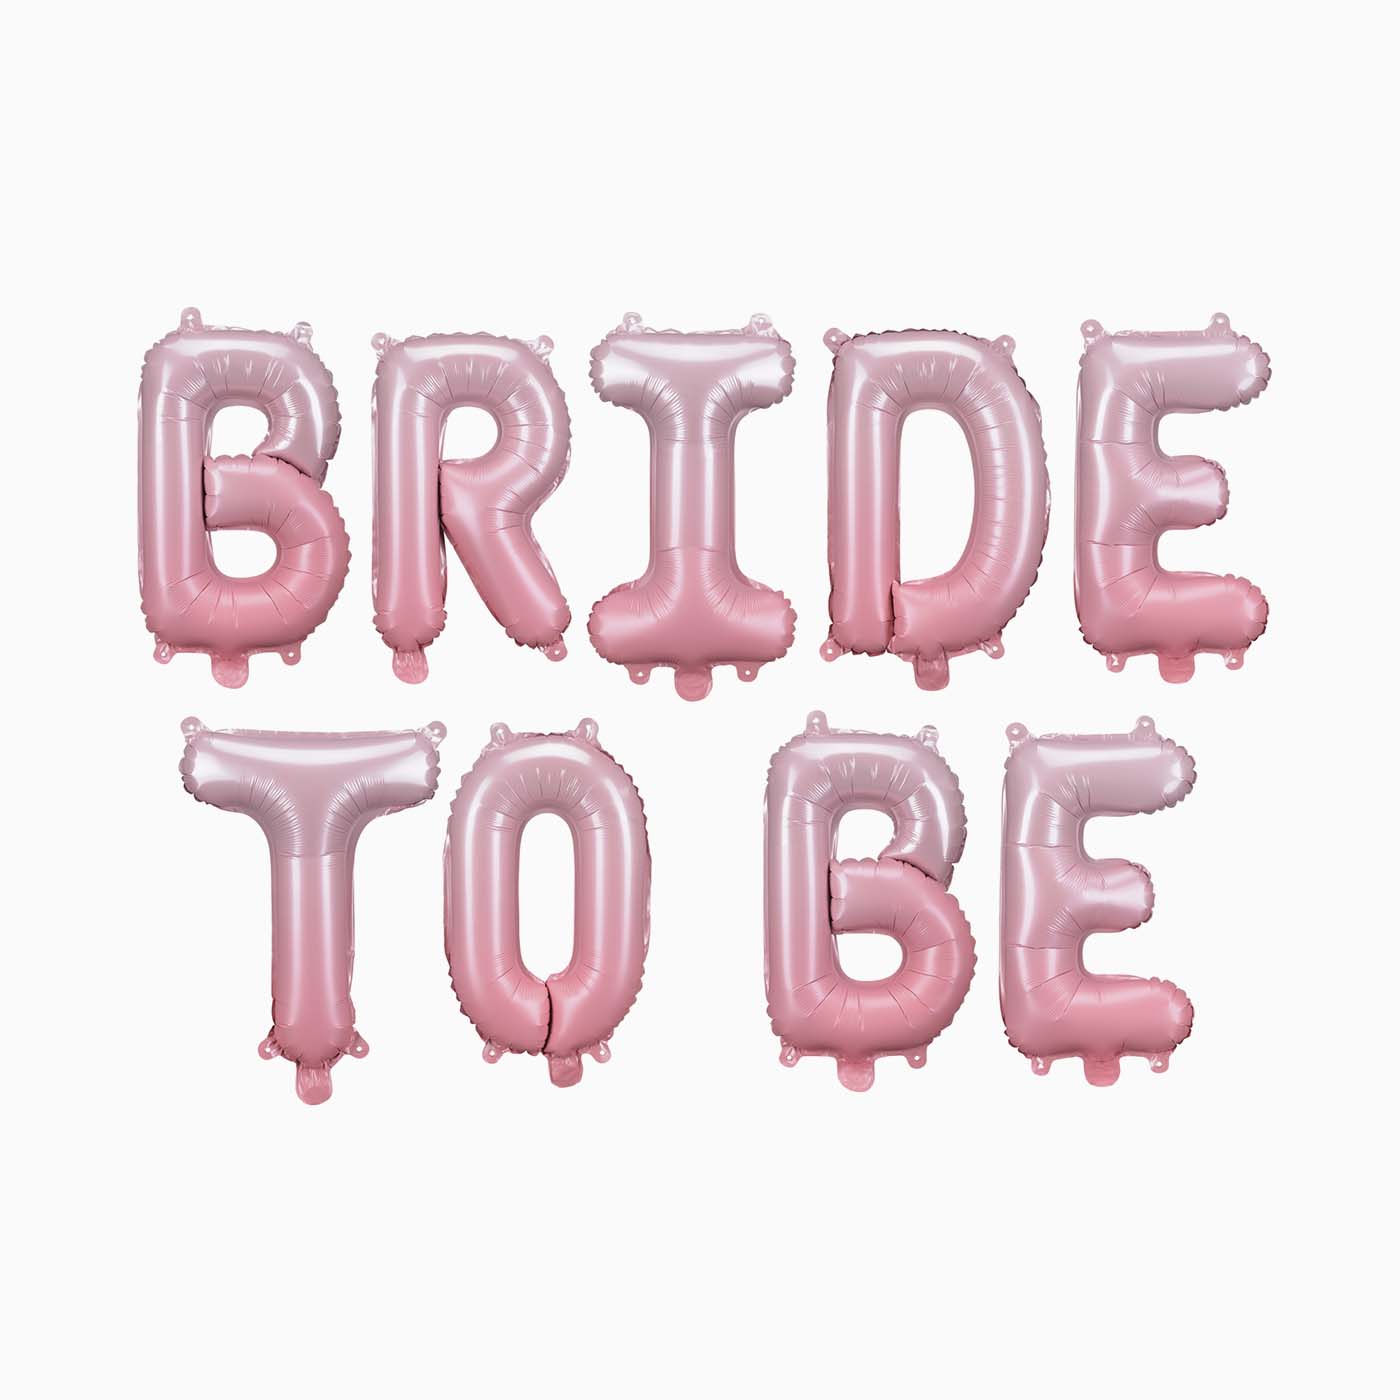 Globo Letras Foil "Bride to Be" Despedida de Soltera